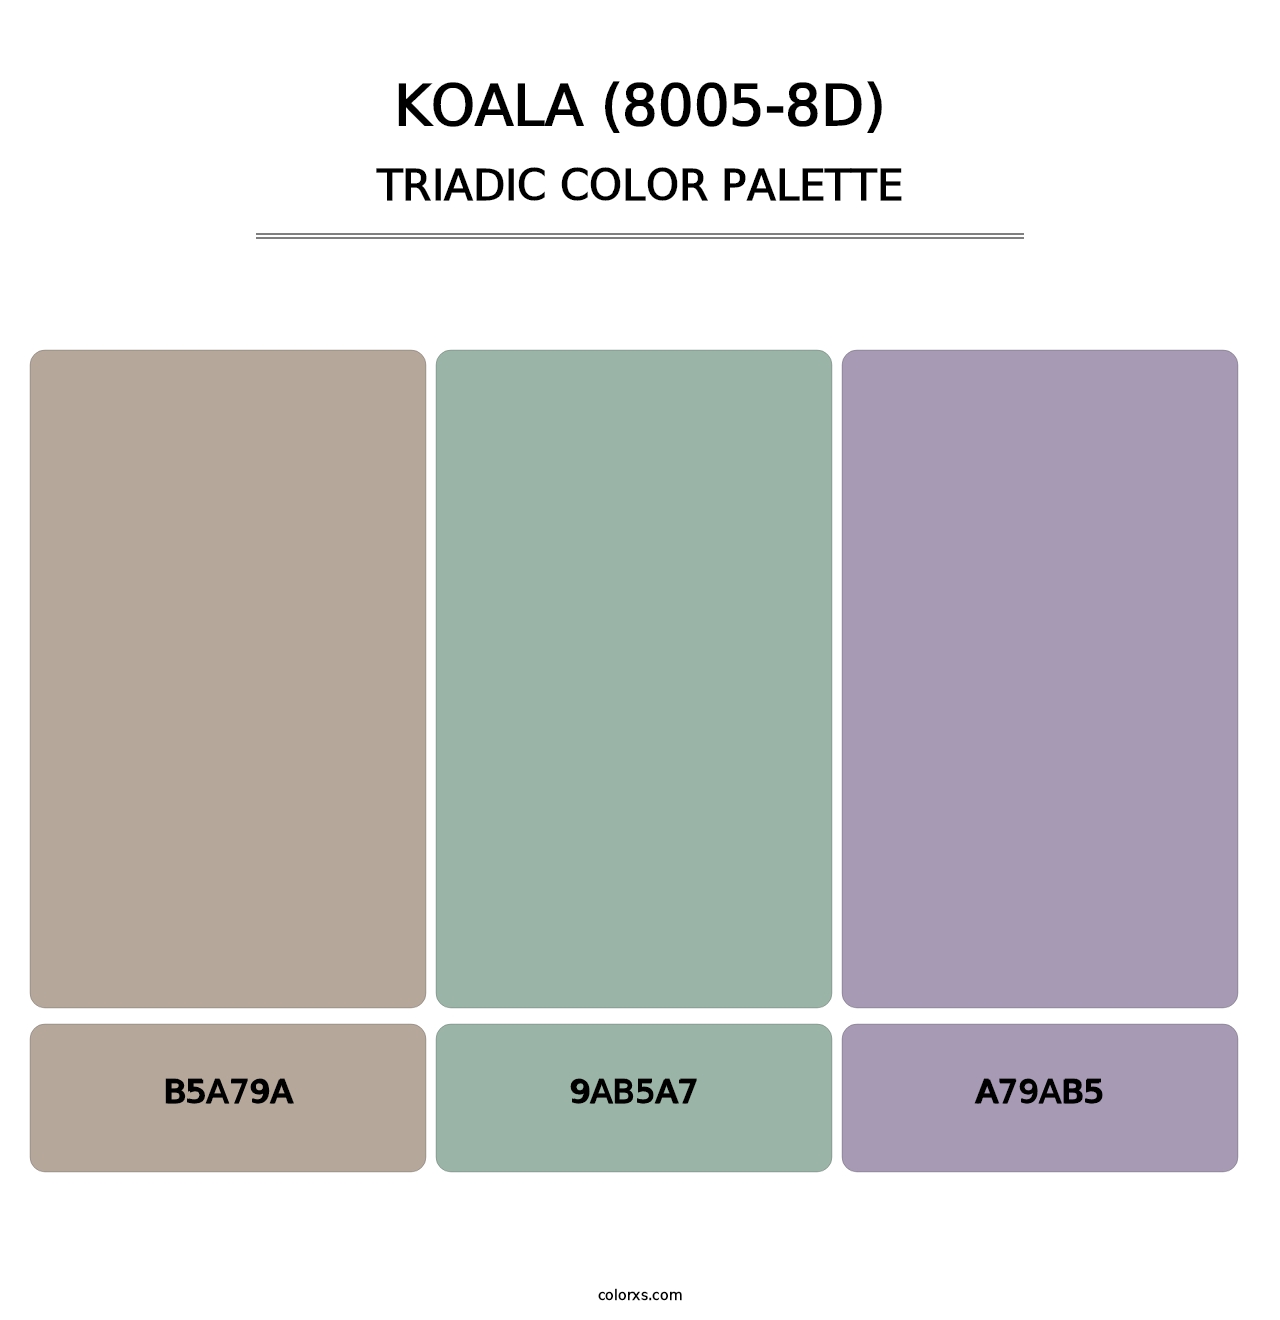 Koala (8005-8D) - Triadic Color Palette